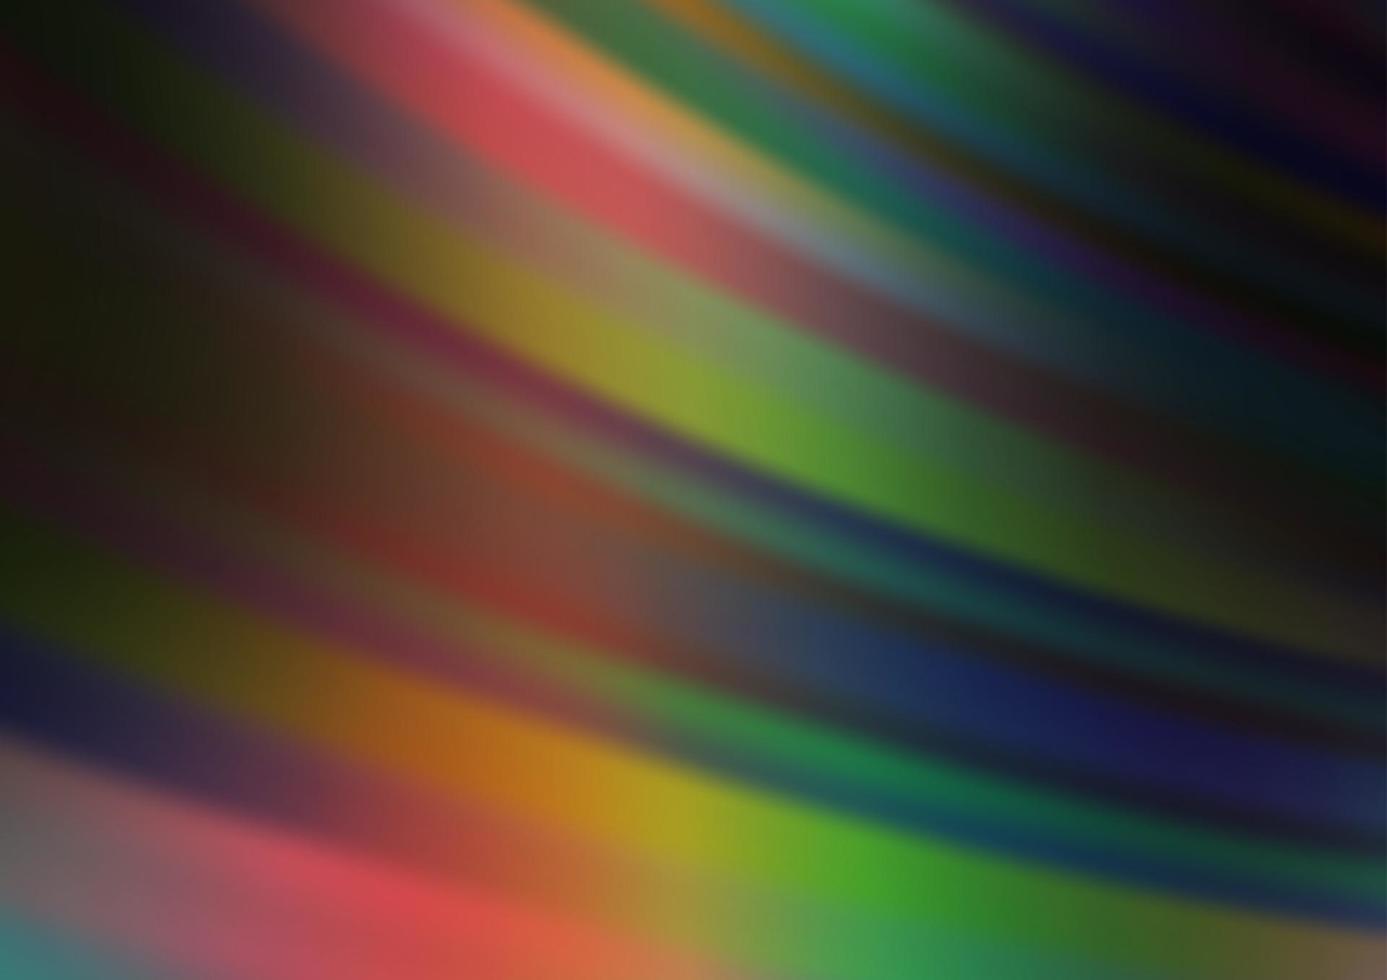 dunkle mehrfarbige, regenbogenfarbene Vektorvorlage mit wiederholten Stöcken. vektor